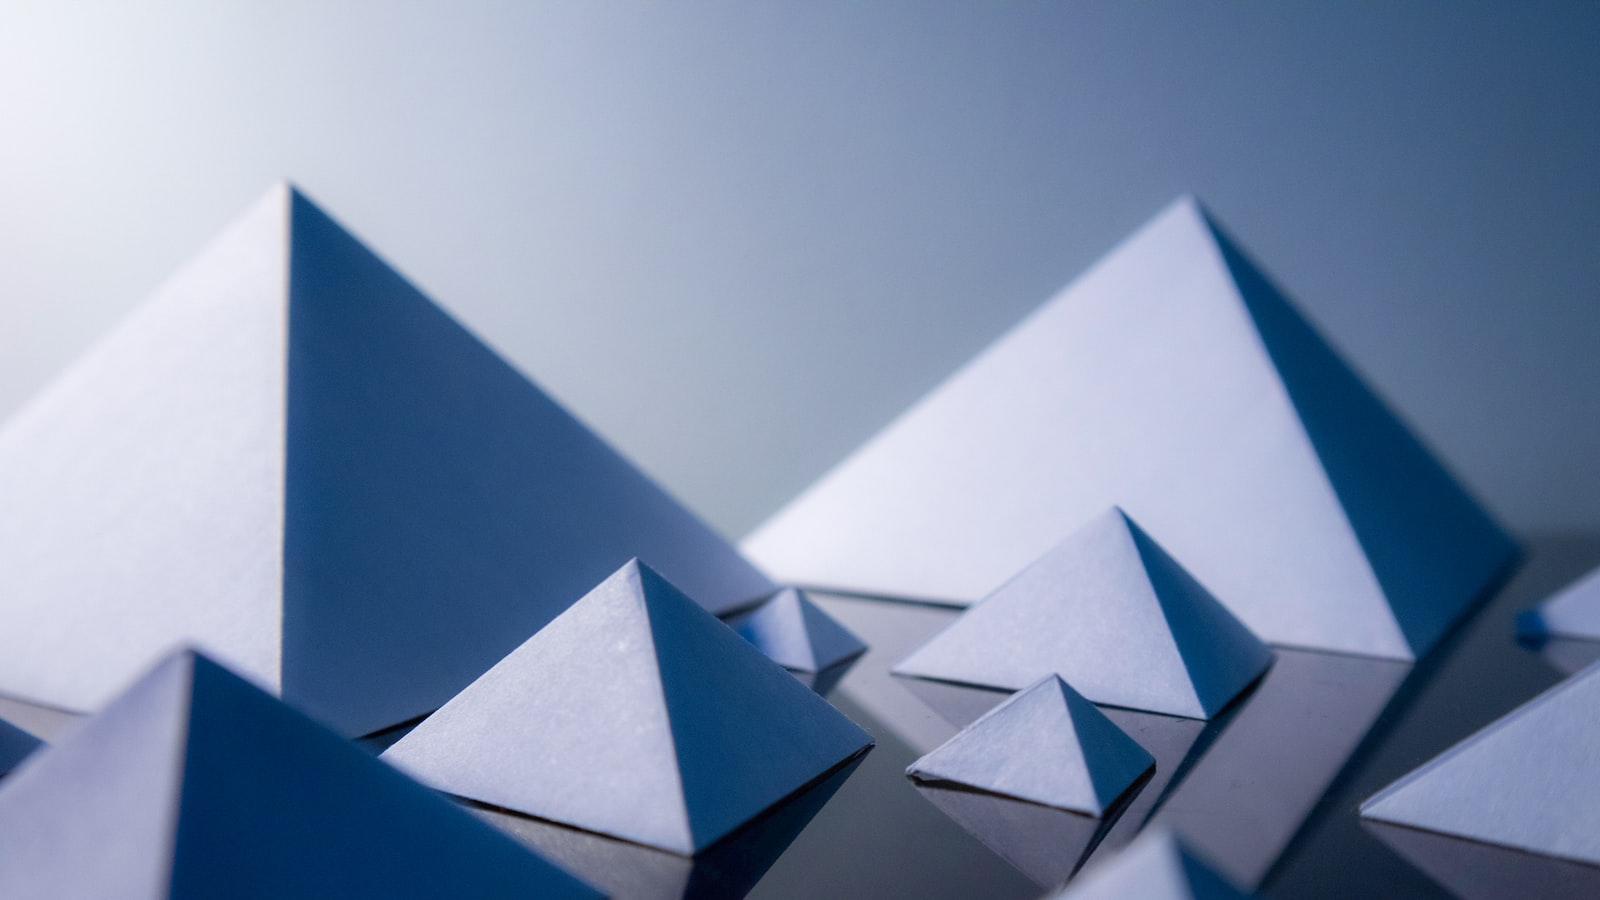 Origami Design: Unlocking Creative Possibilities